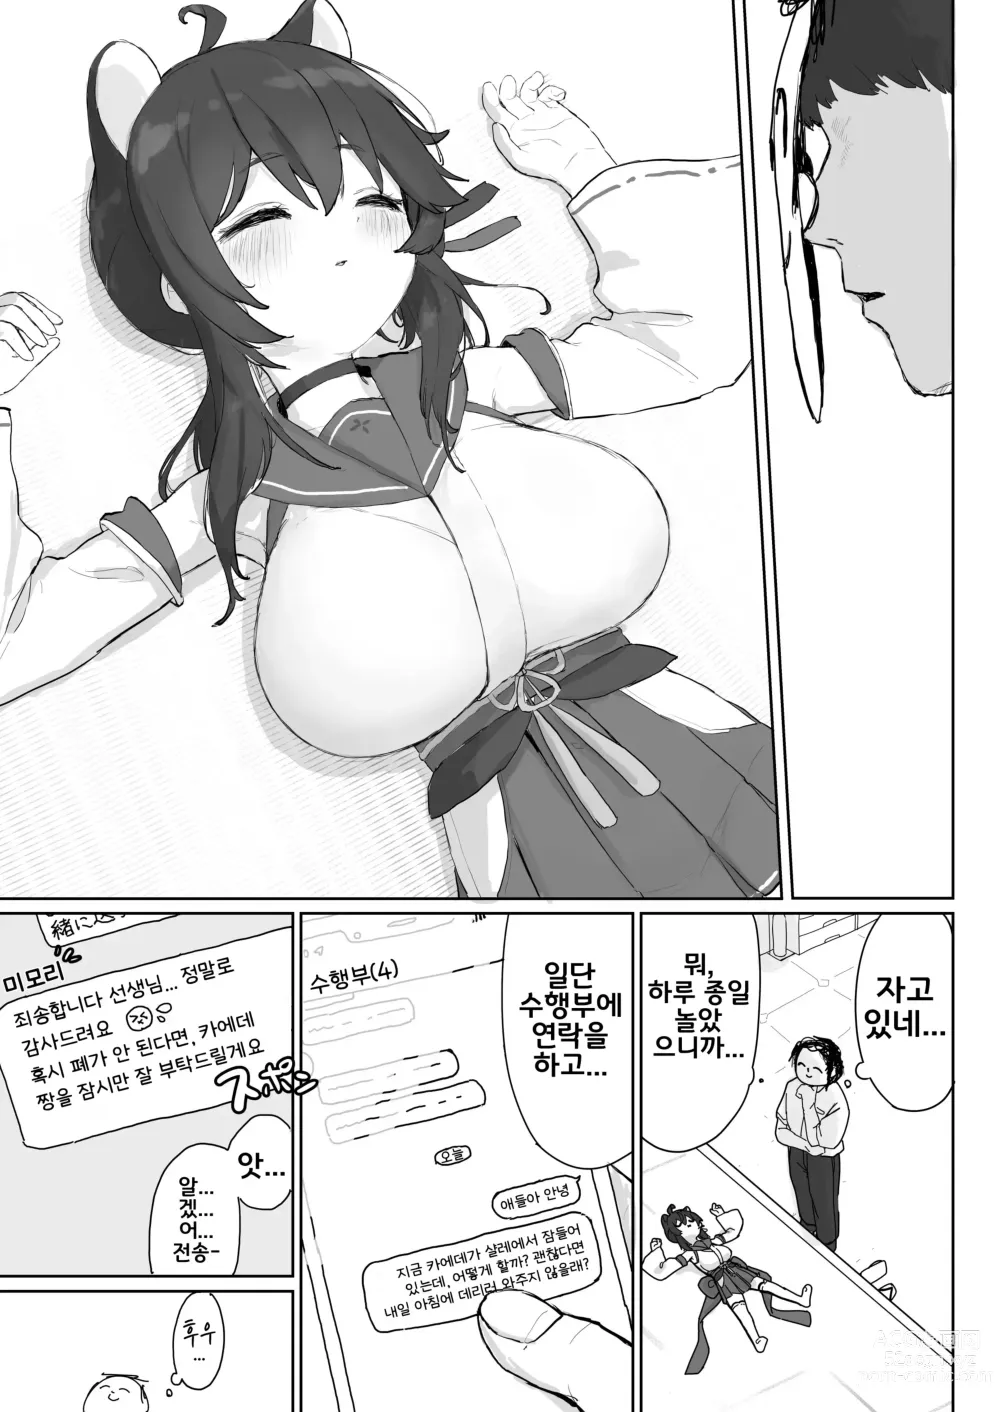 Page 6 of doujinshi 일어나기 전까지는 멈출 거니까...